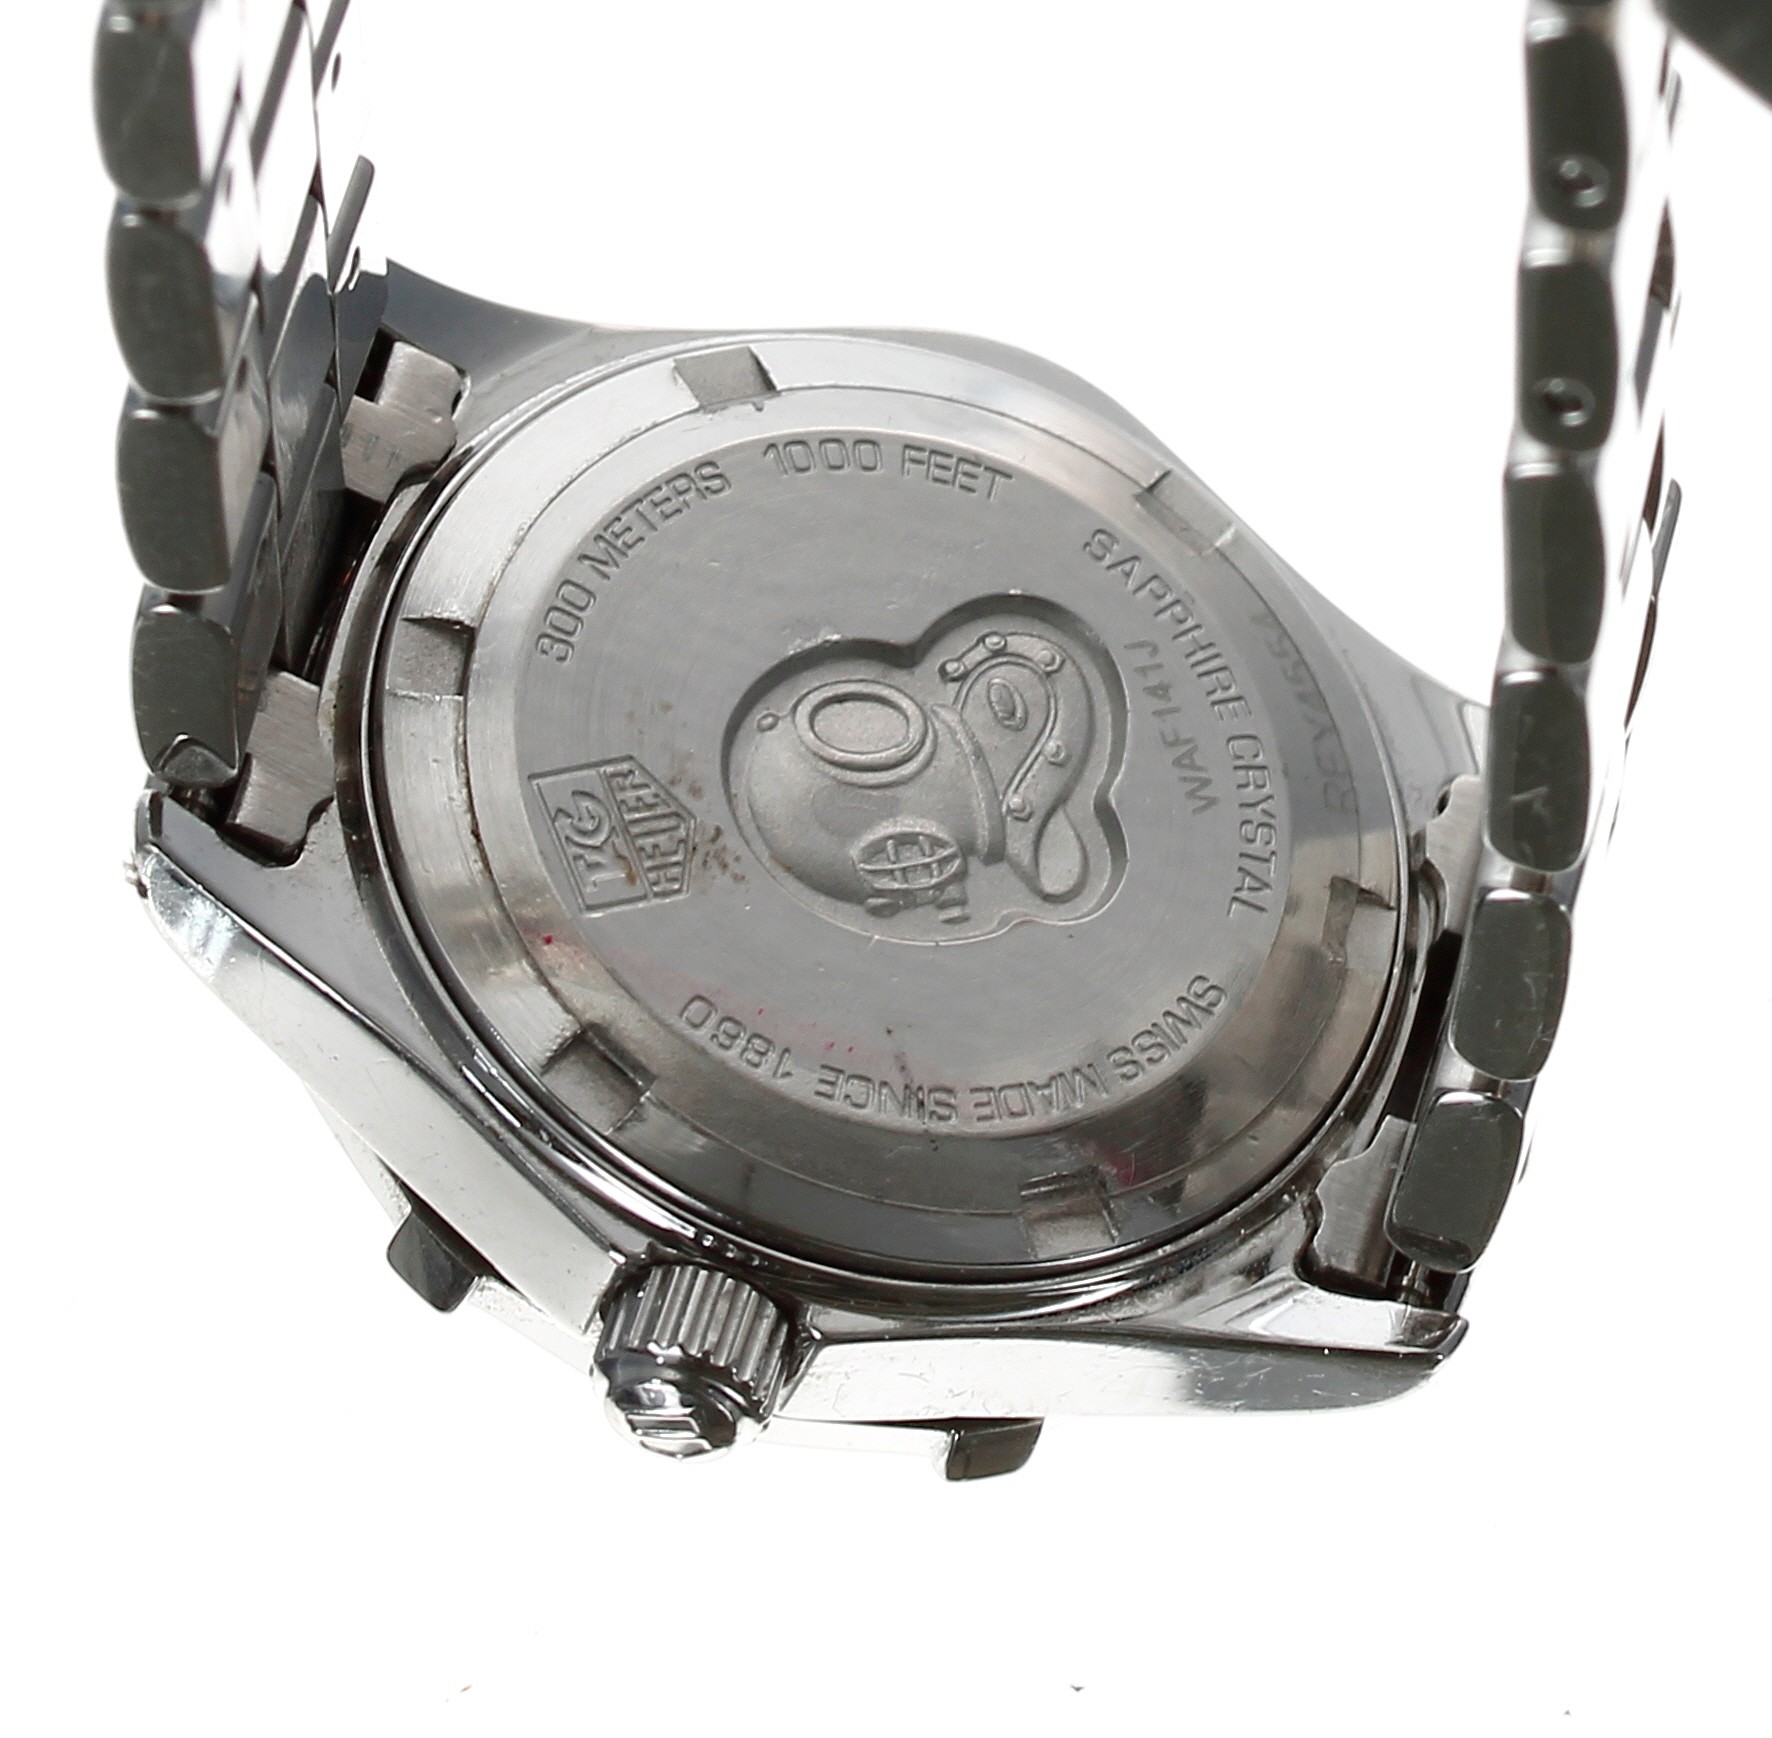 Tag Heuer Aquaracer stainless steel lady's wristwatch, reference no. WAF141J, serial no. REY4xxx, - Bild 2 aus 2